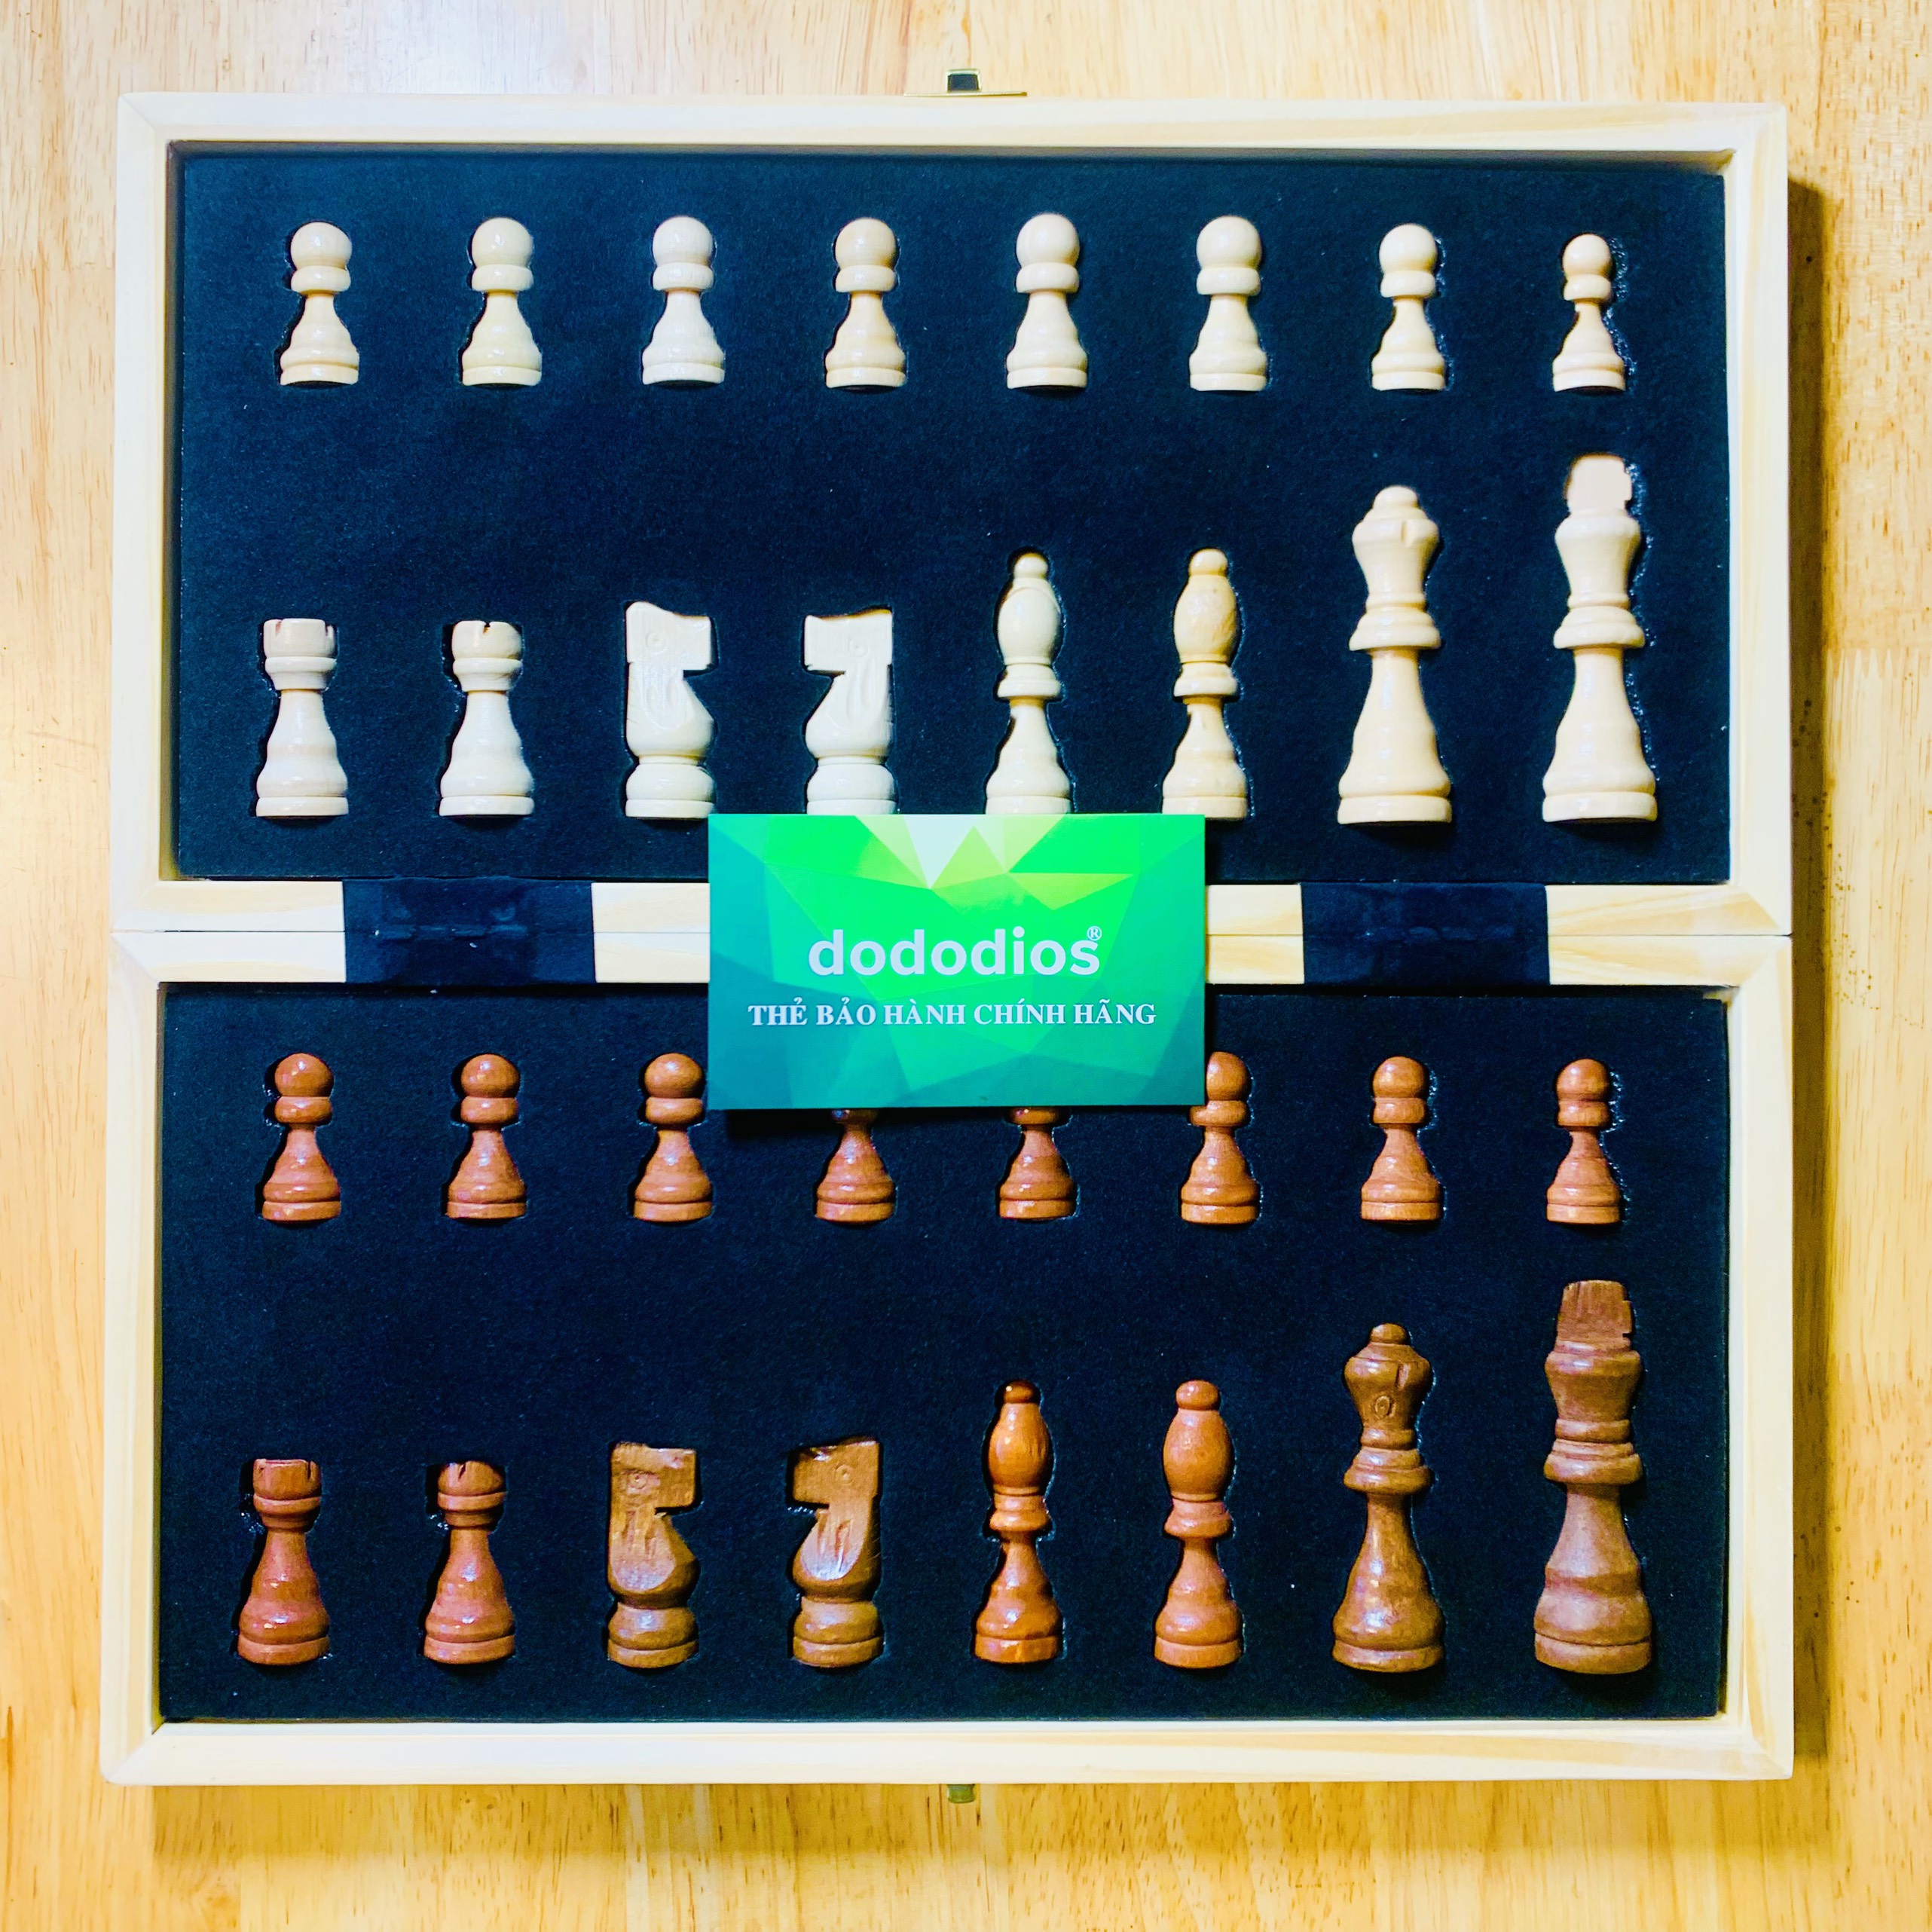 Bộ cờ vua gỗ nam châm cao cấp - chính hãng DoDoDios - Bộ cờ vua cao cấp